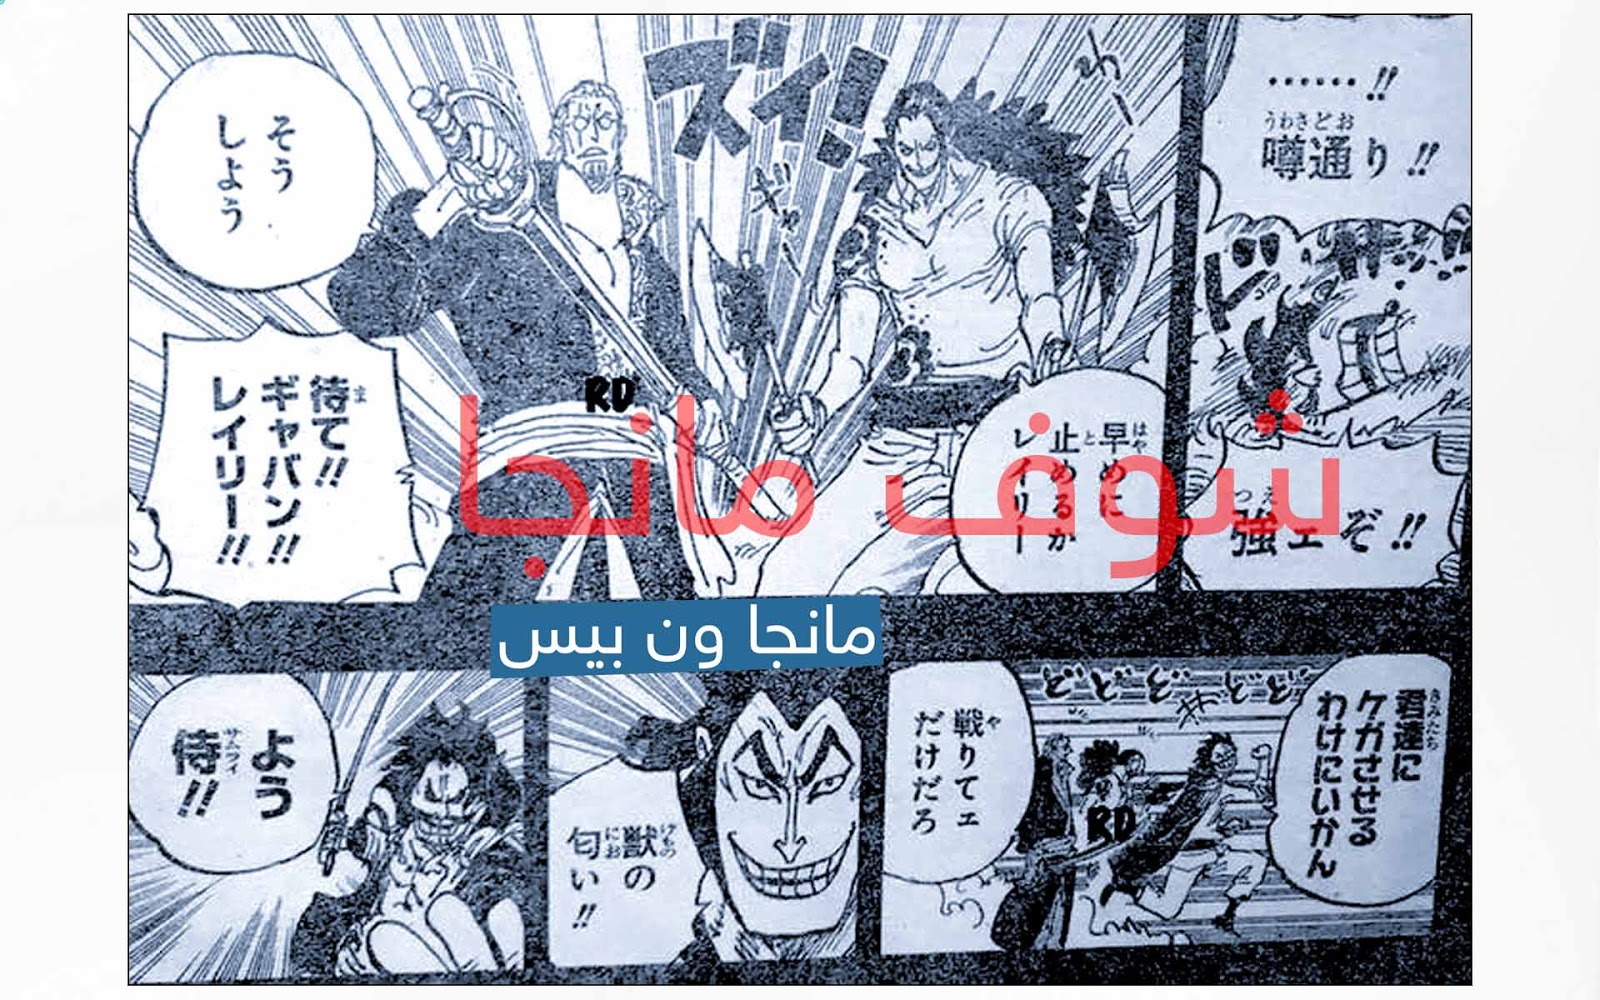 مانجا ون بيس ٩٦٧ مانجا ون بيس 928 One Piece Manga مترجم عربي اون لاين